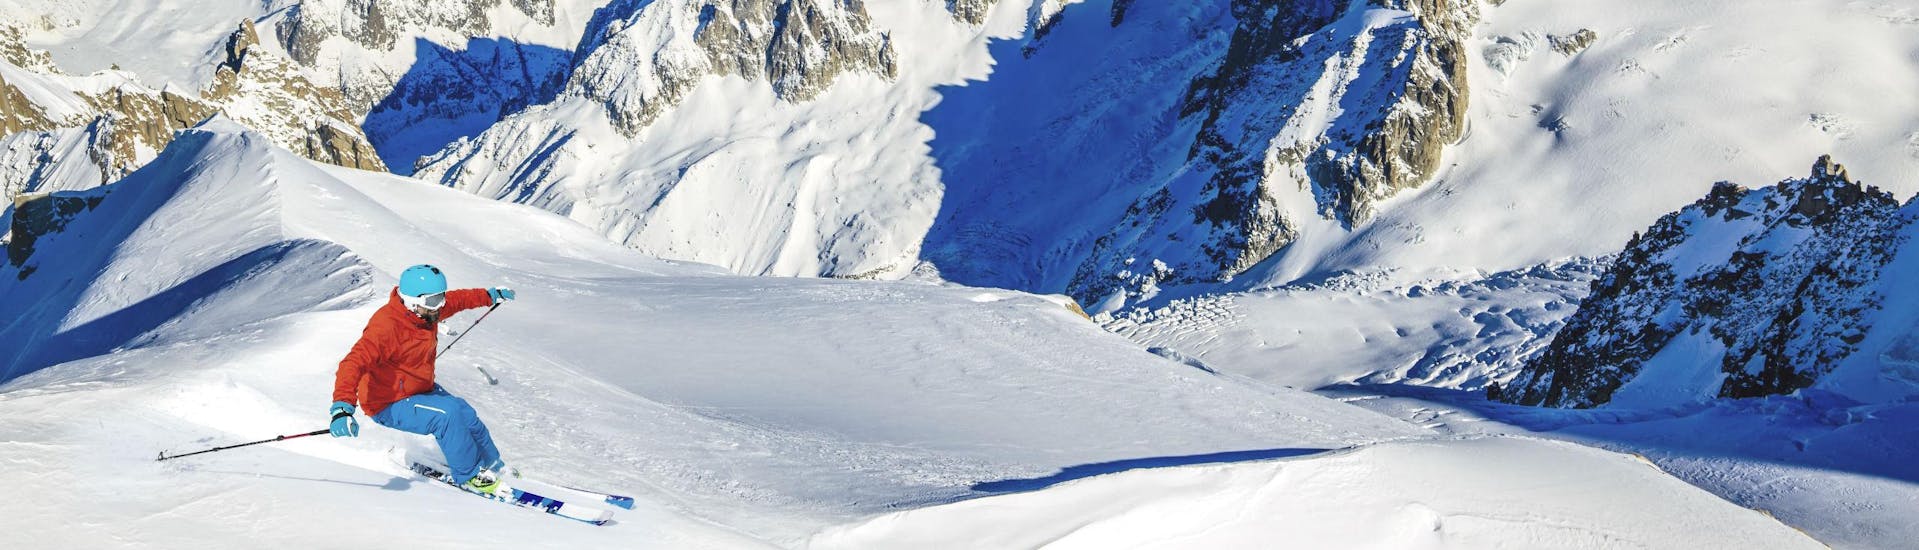 Un skieur skie dans la poudreuse sur l'une des pistes de Chamonix - Mont Blanc en Haute-Savoie, où les écoles de ski locales proposent une grande variété de cours de ski.